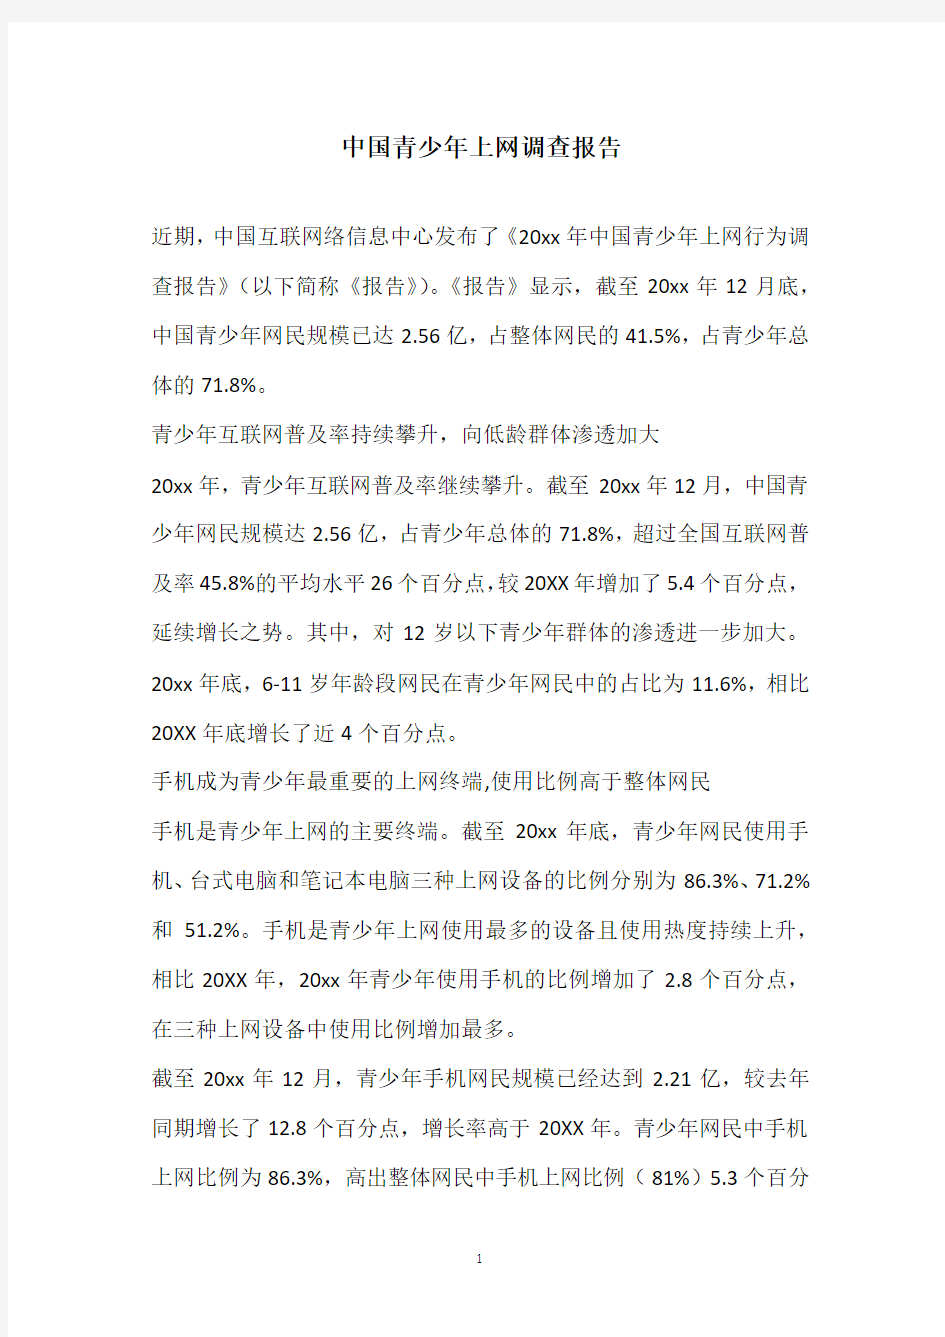 2020年中国青少年上网调查报告